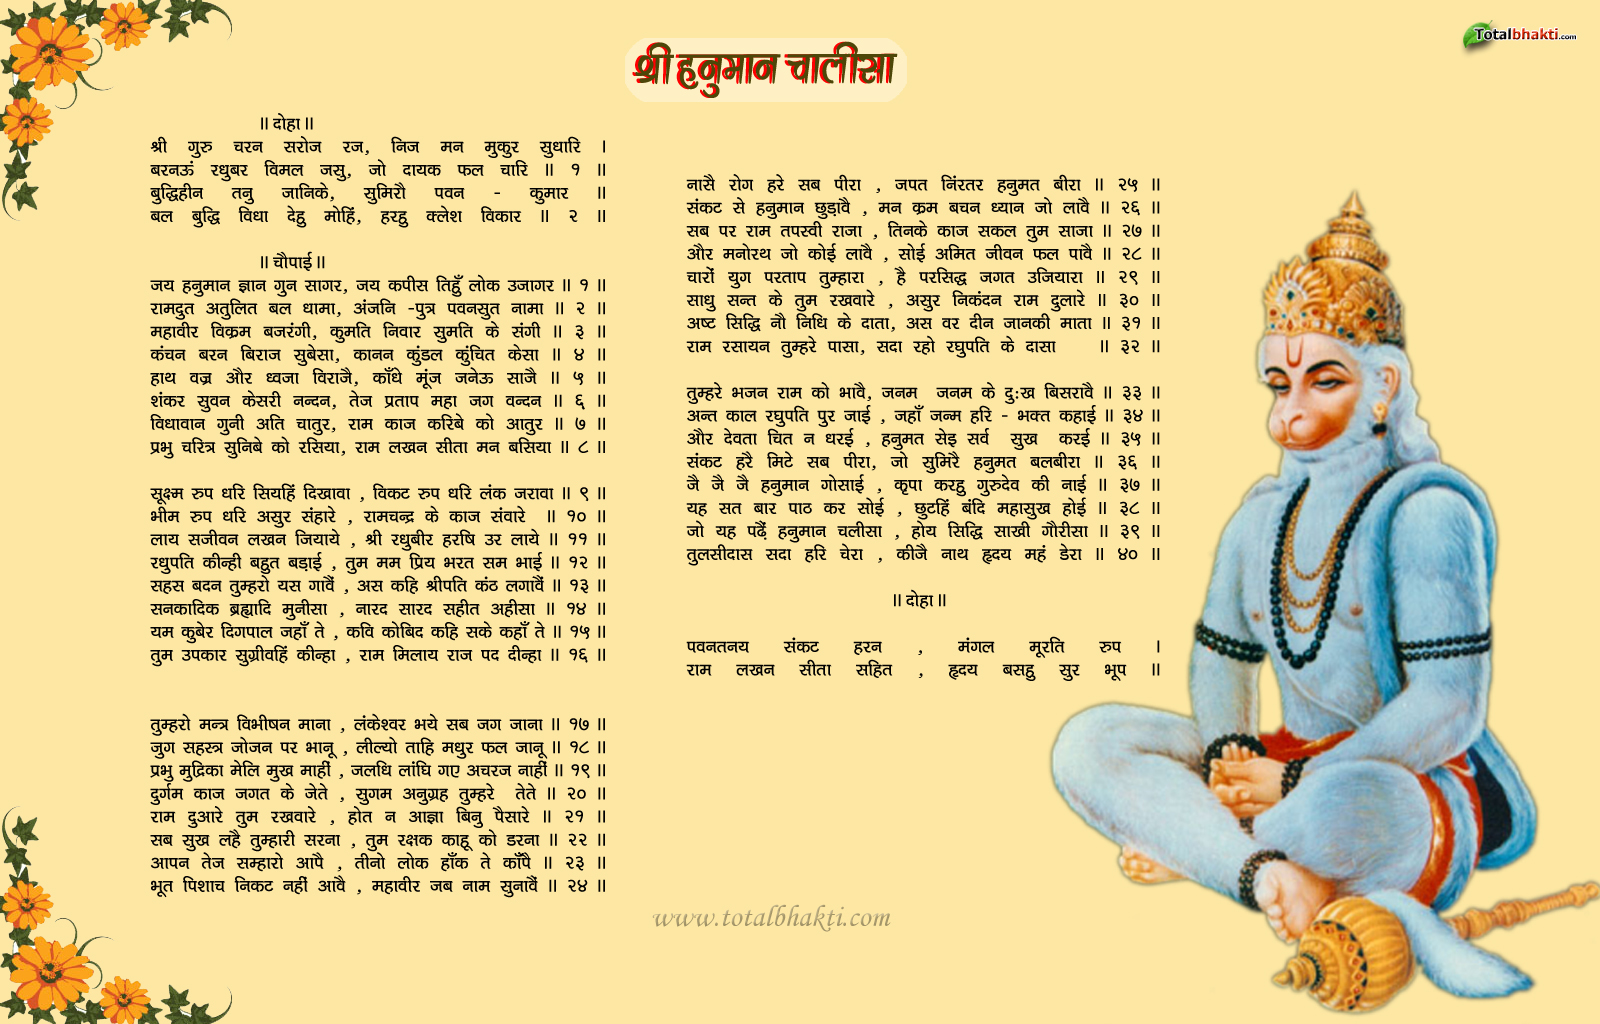 Wallpaper Hanuman